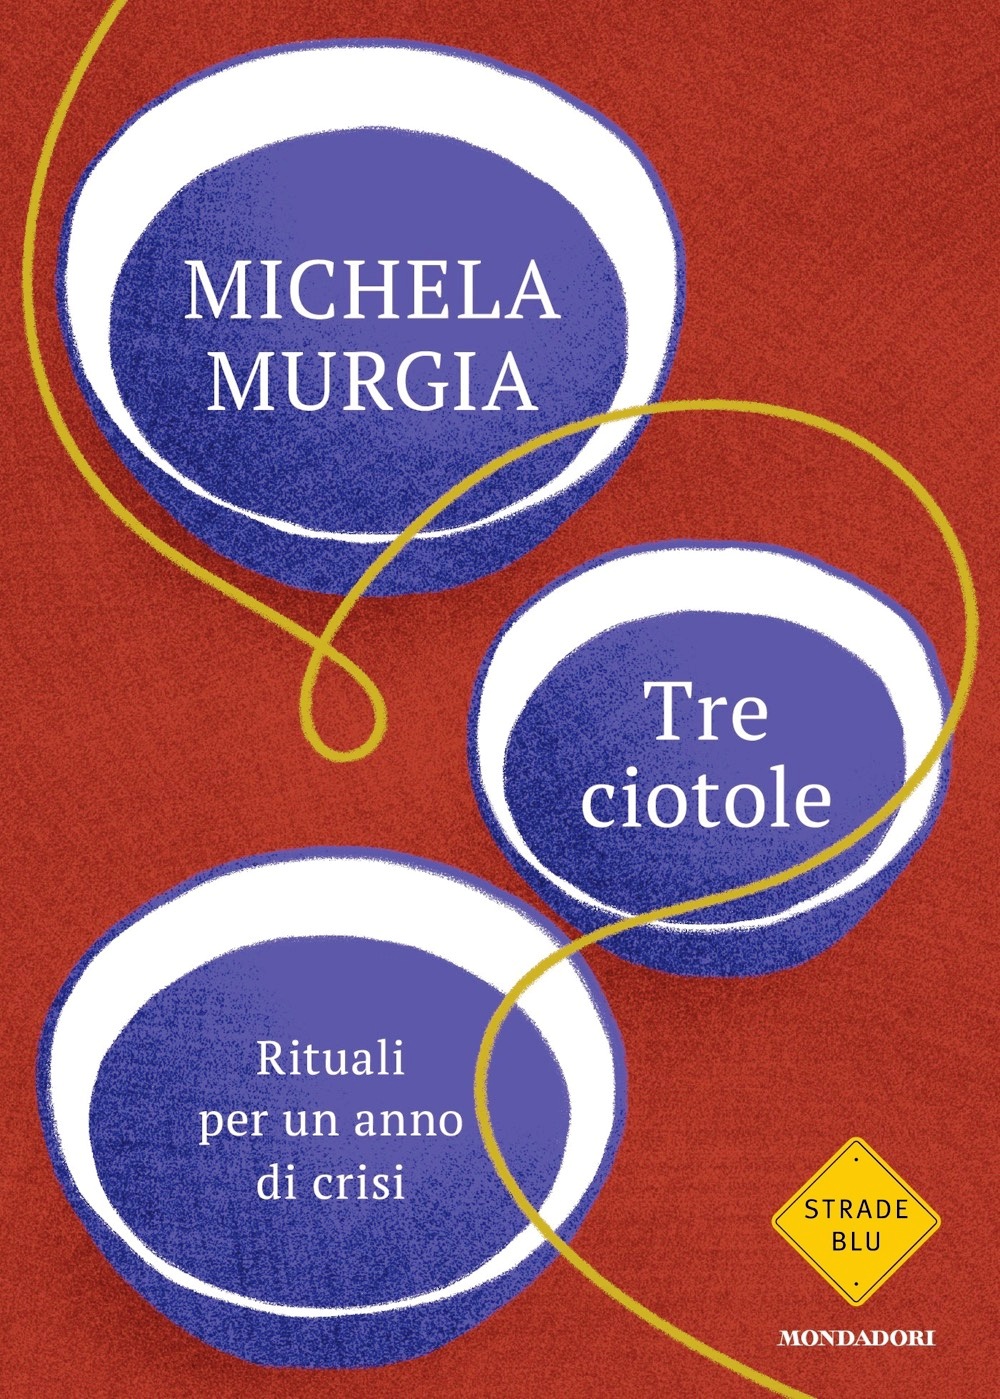 01 Michela Murgia Tre ciotole